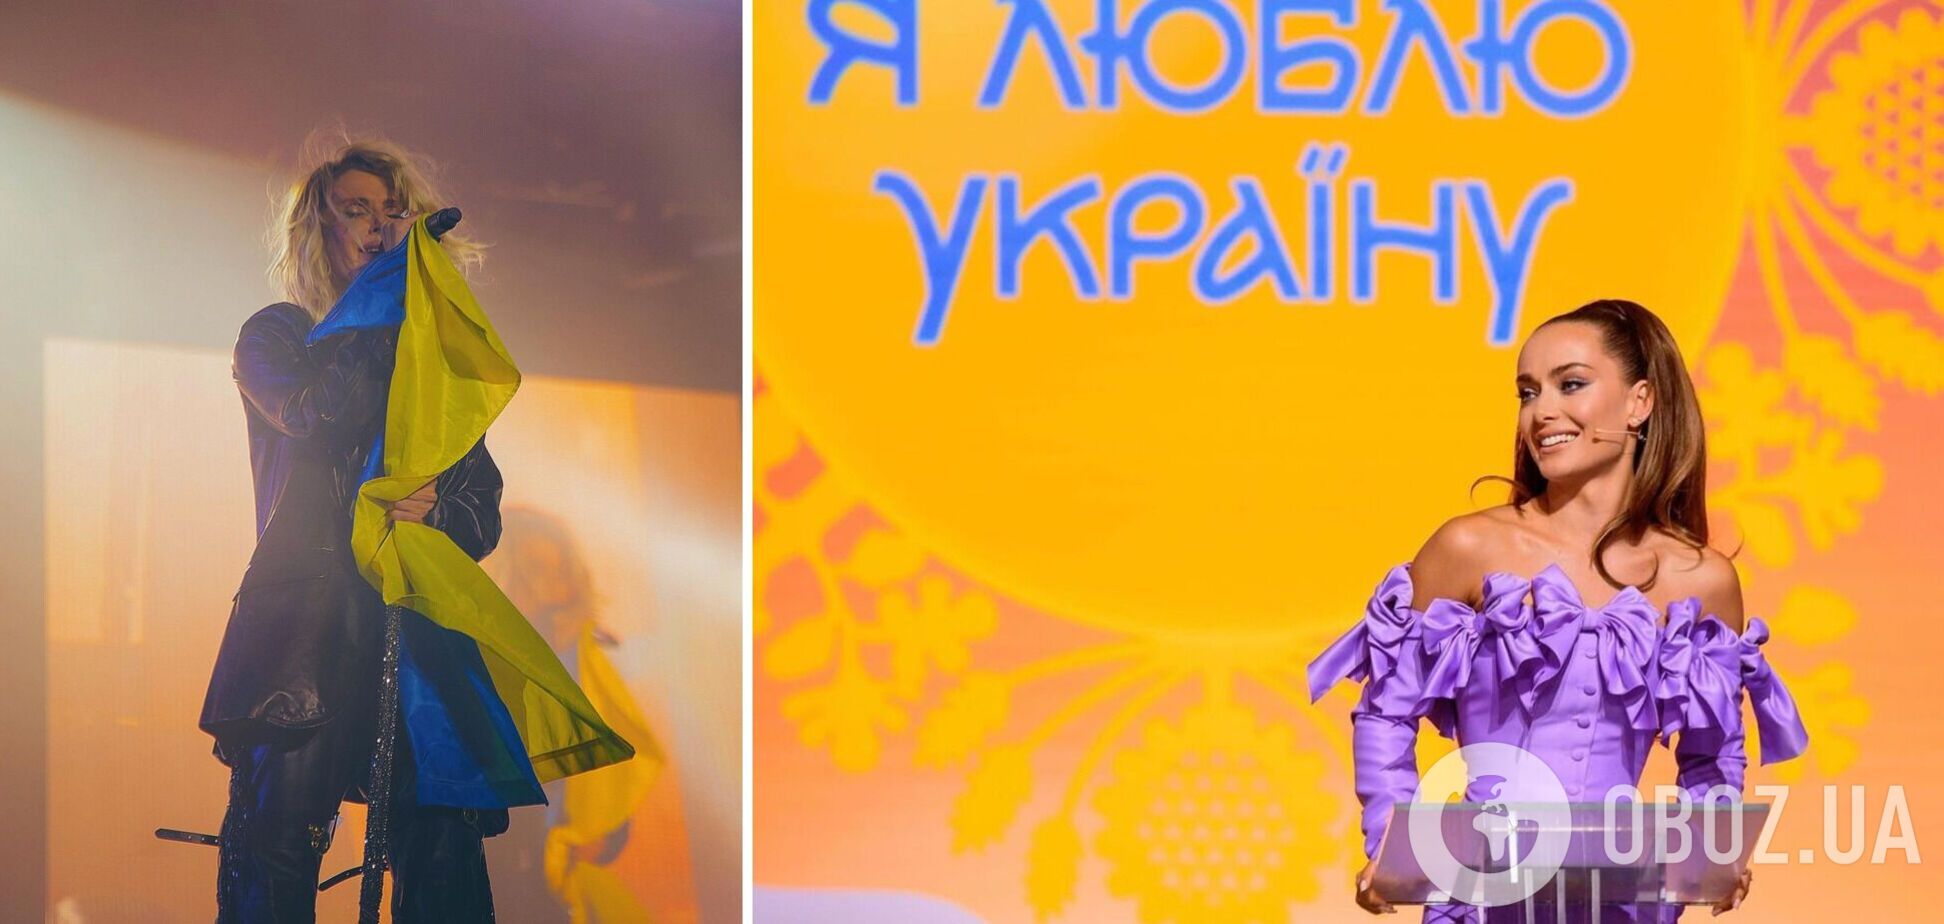 Устали 'играть' в украинца: 5 звезд, вернувшихся к русскому языку